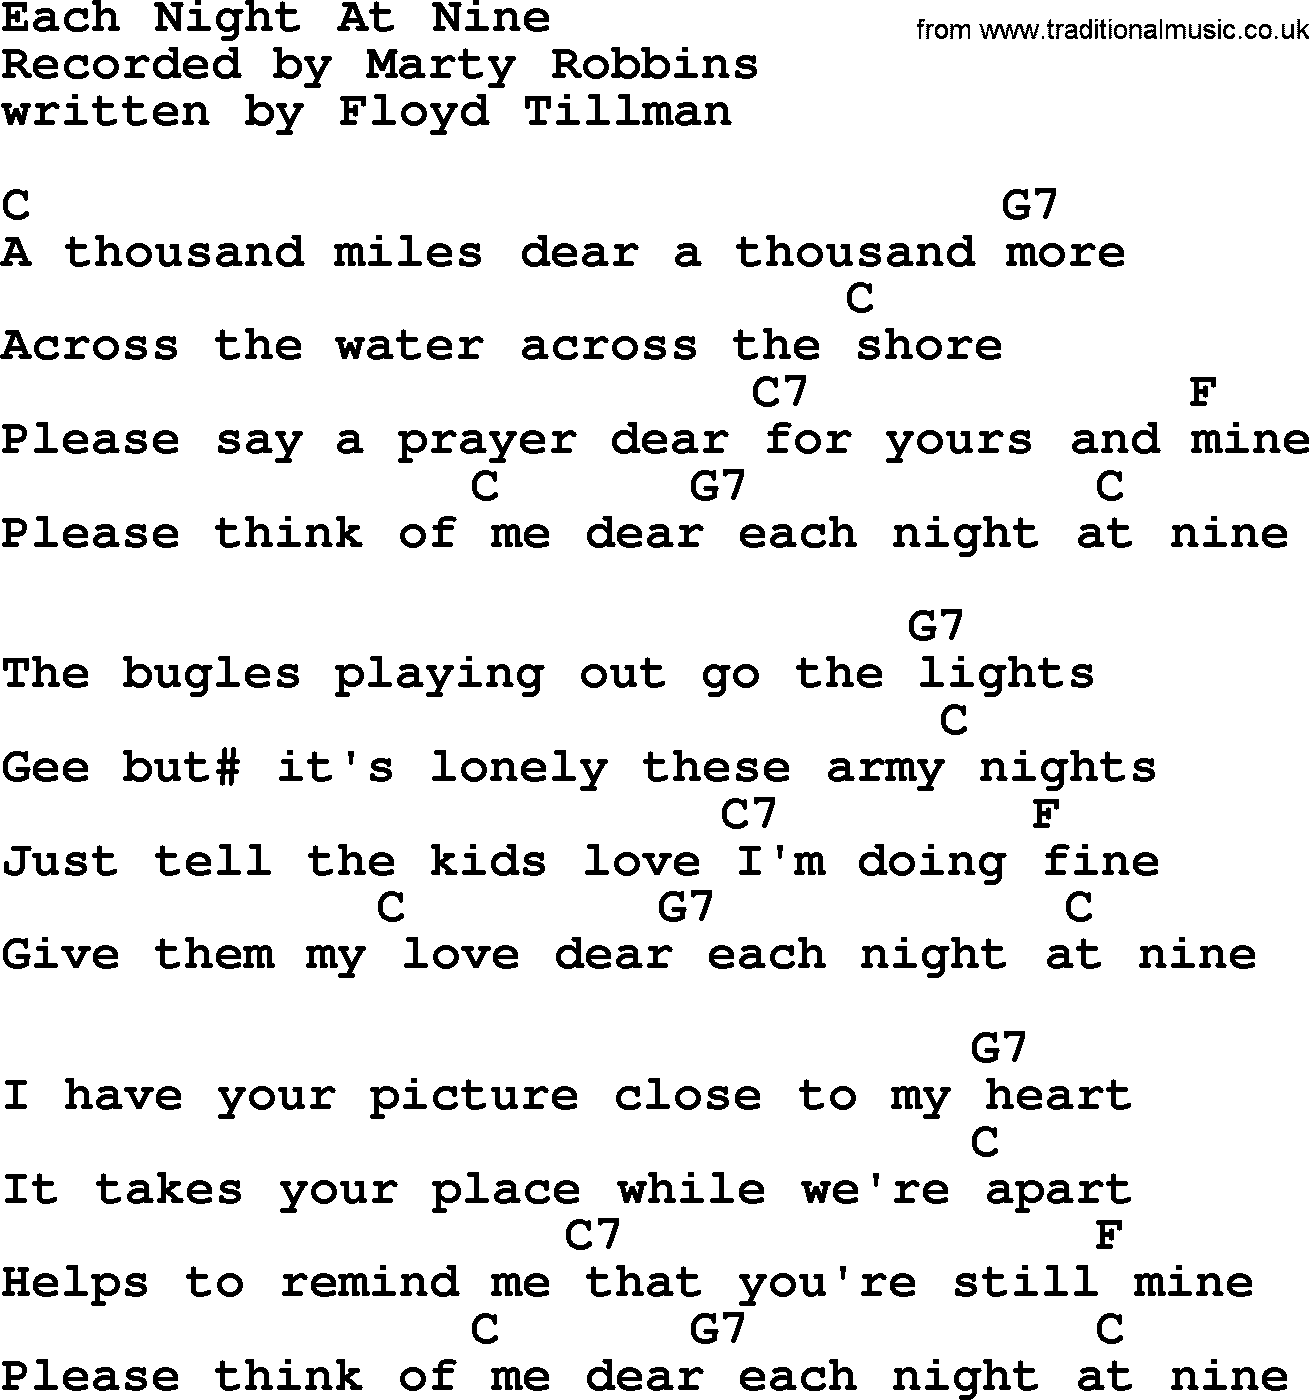 Marty Robbins song: Each Night At Nine, lyrics and chords